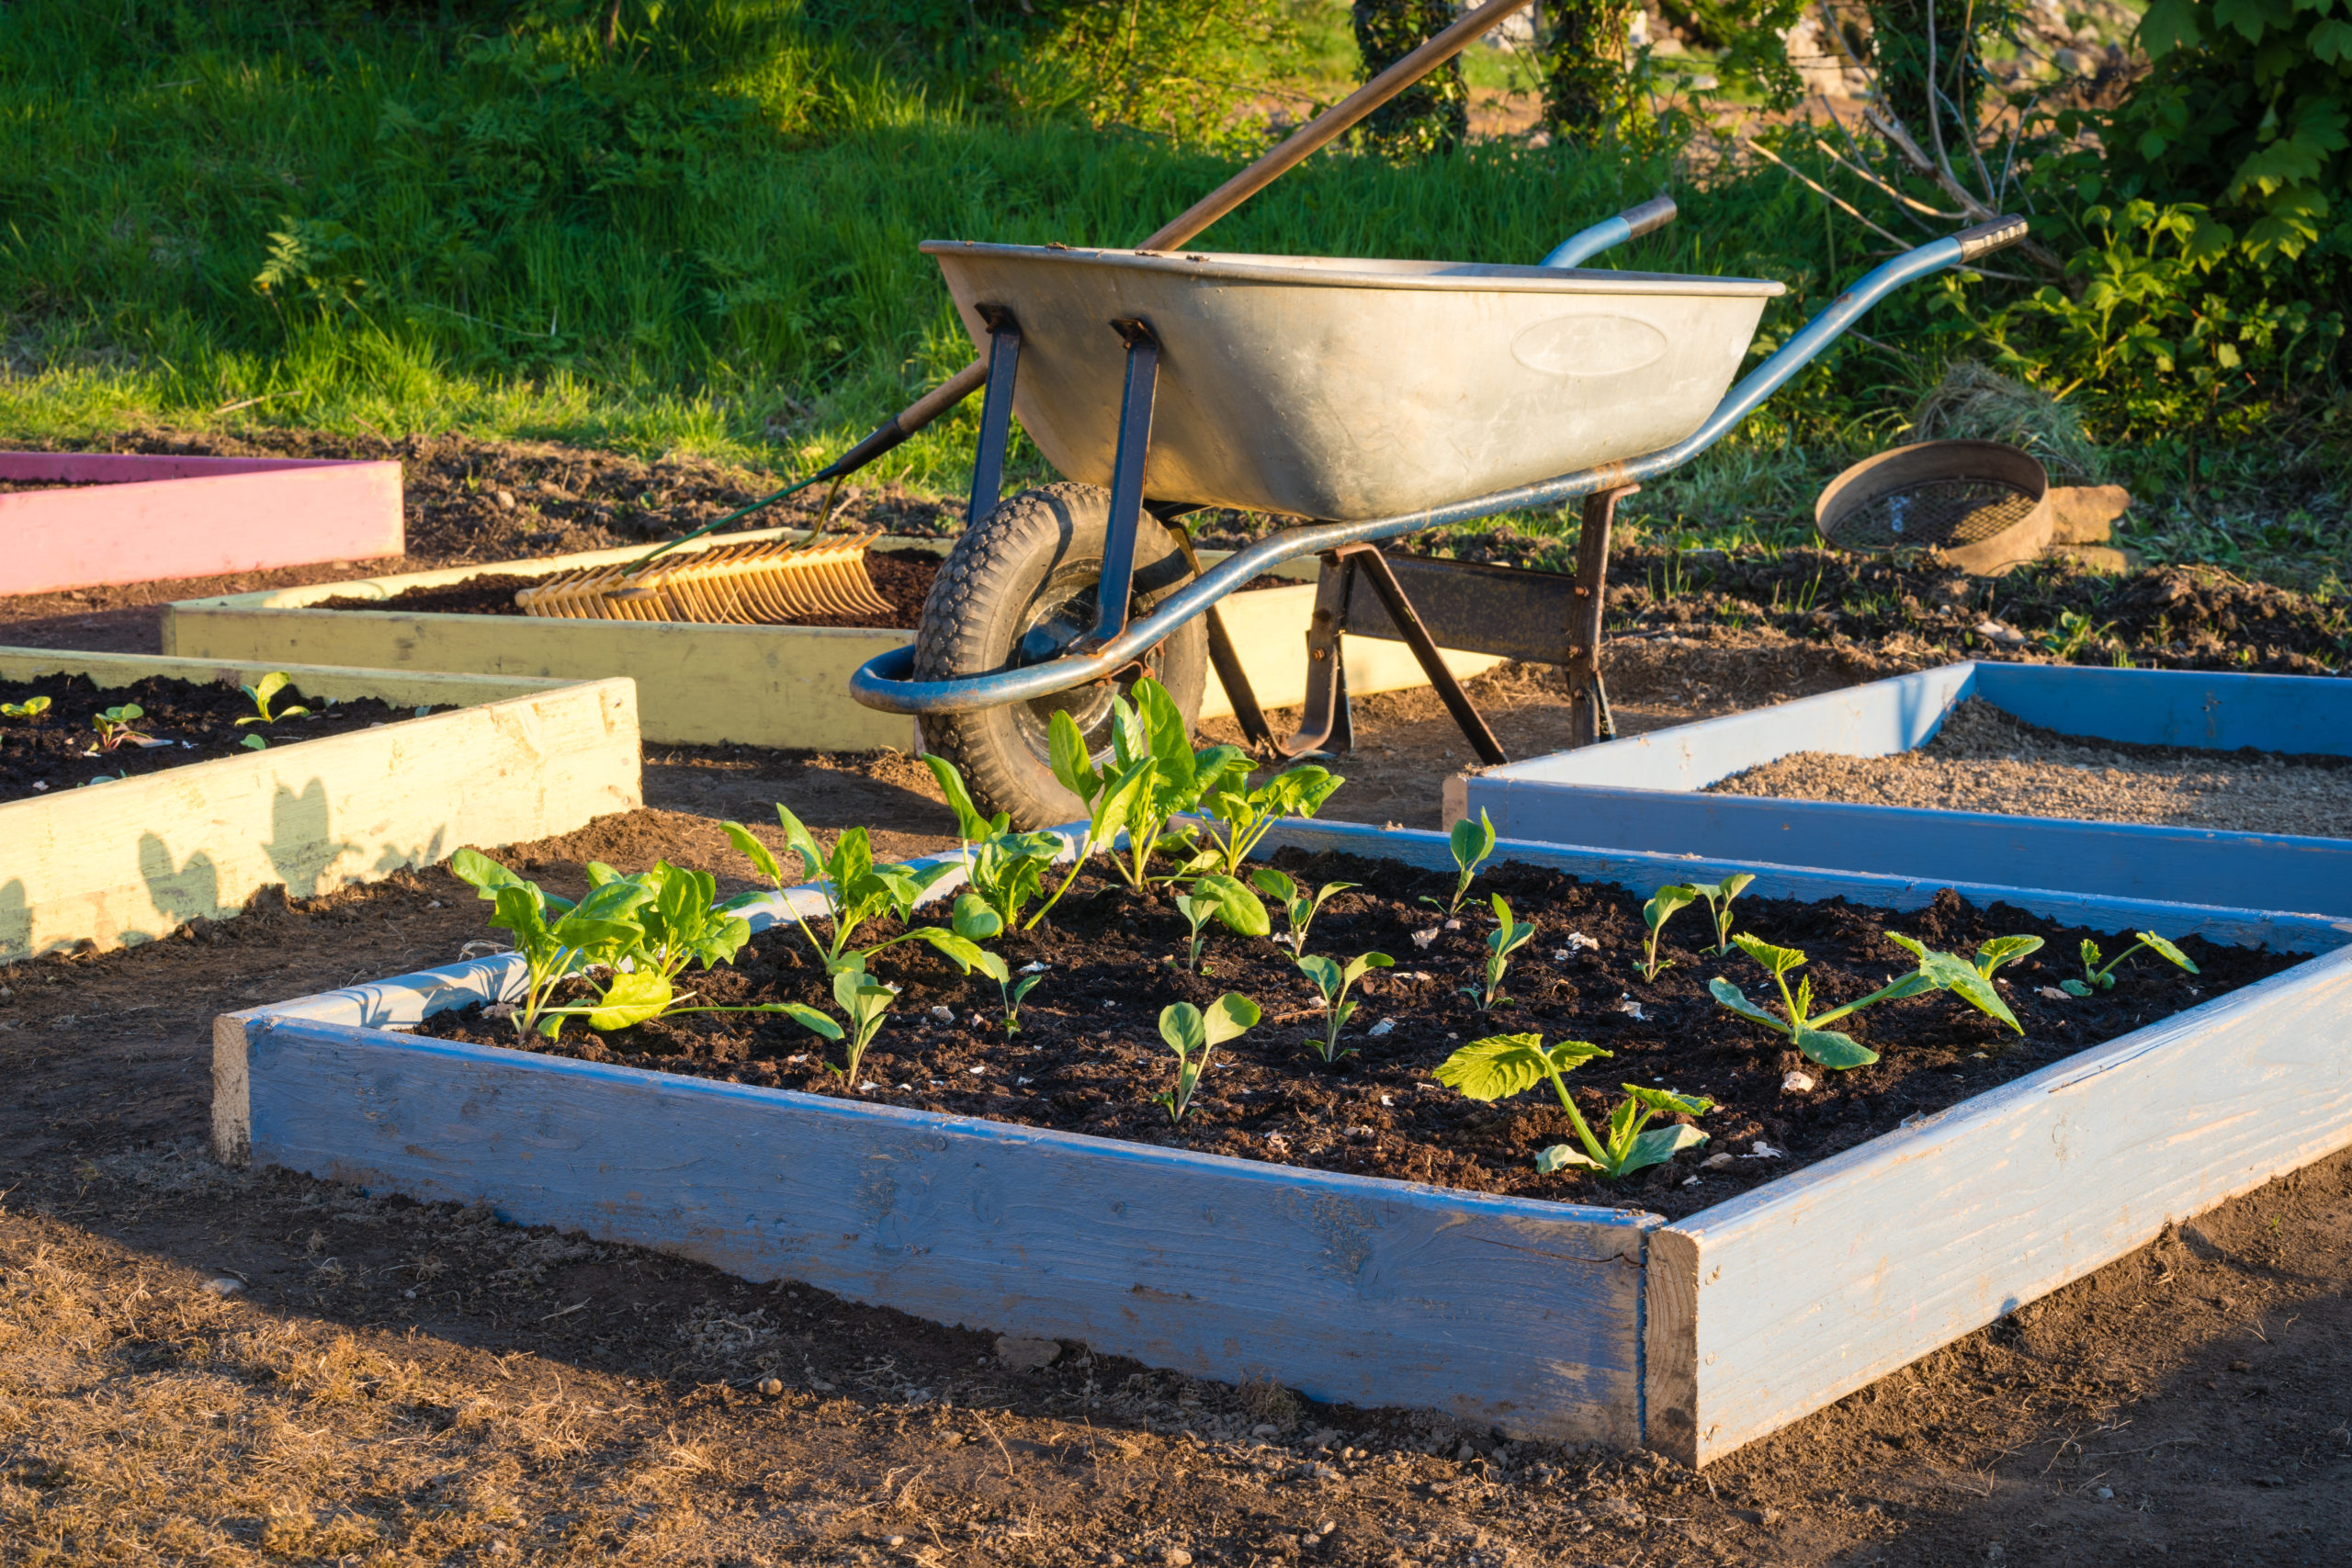 Permaculture : trois méthodes innovantes pour cultiver un jardin potager  luxuriant et abondant - NeozOne